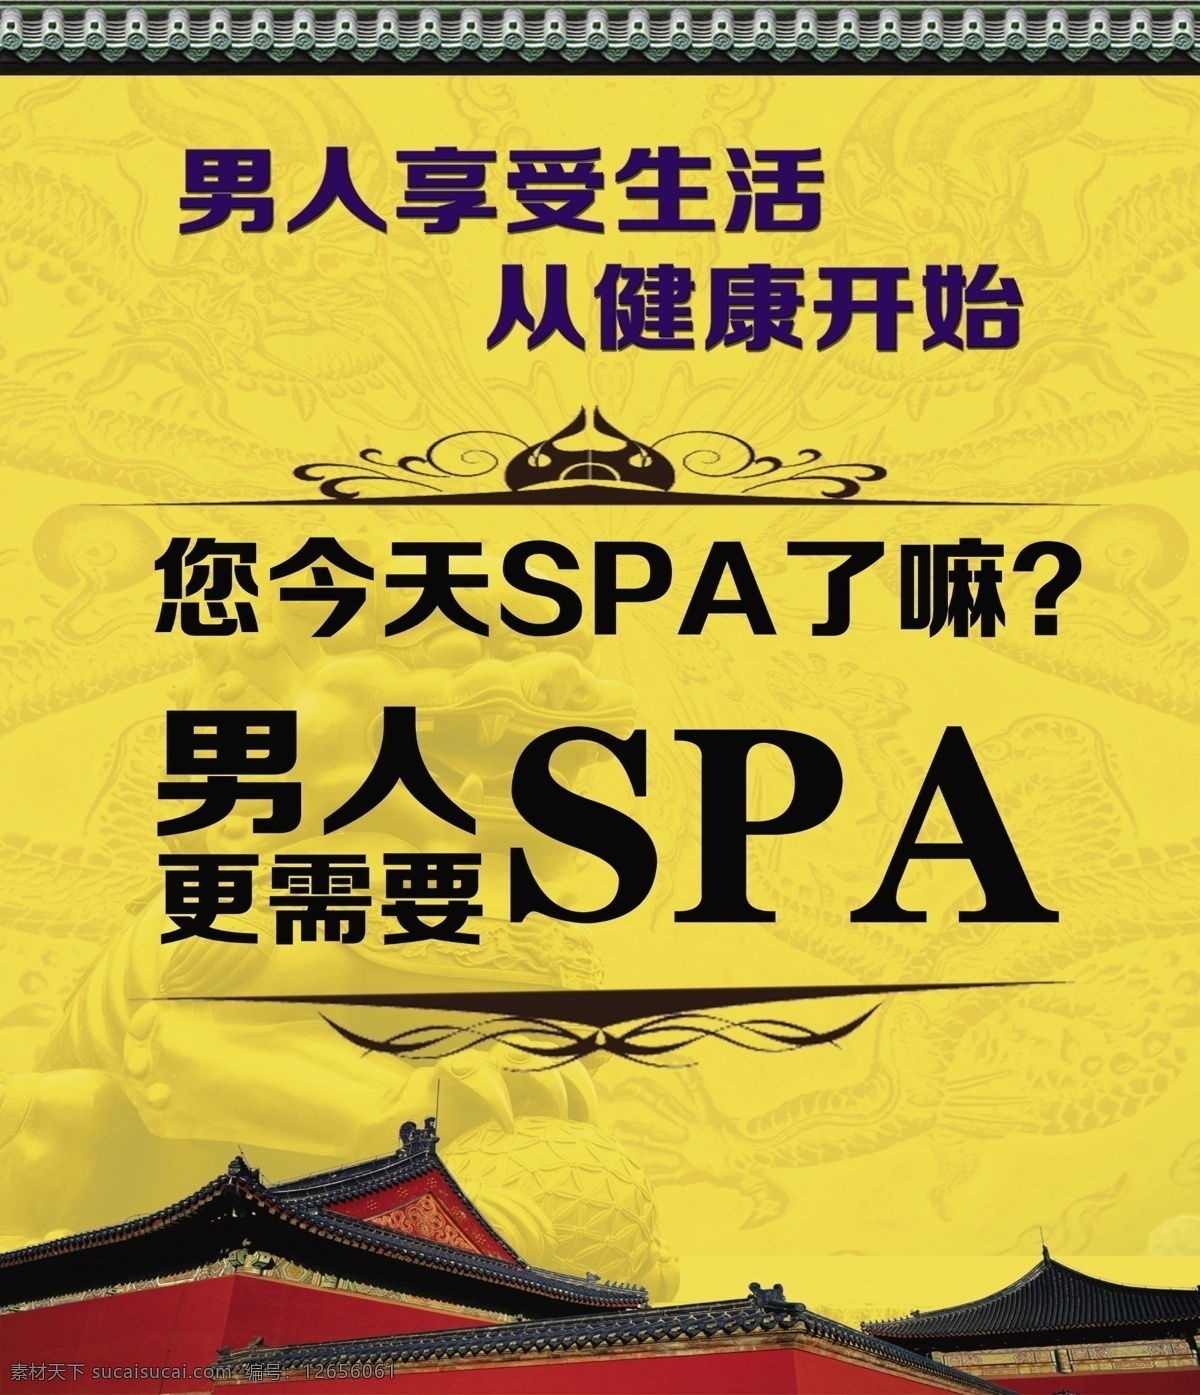 男士spa 分层 养生 美容 拔罐 美容院 复古 中国风 威 伦 凯 男士 spa 广告设计模板 源文件